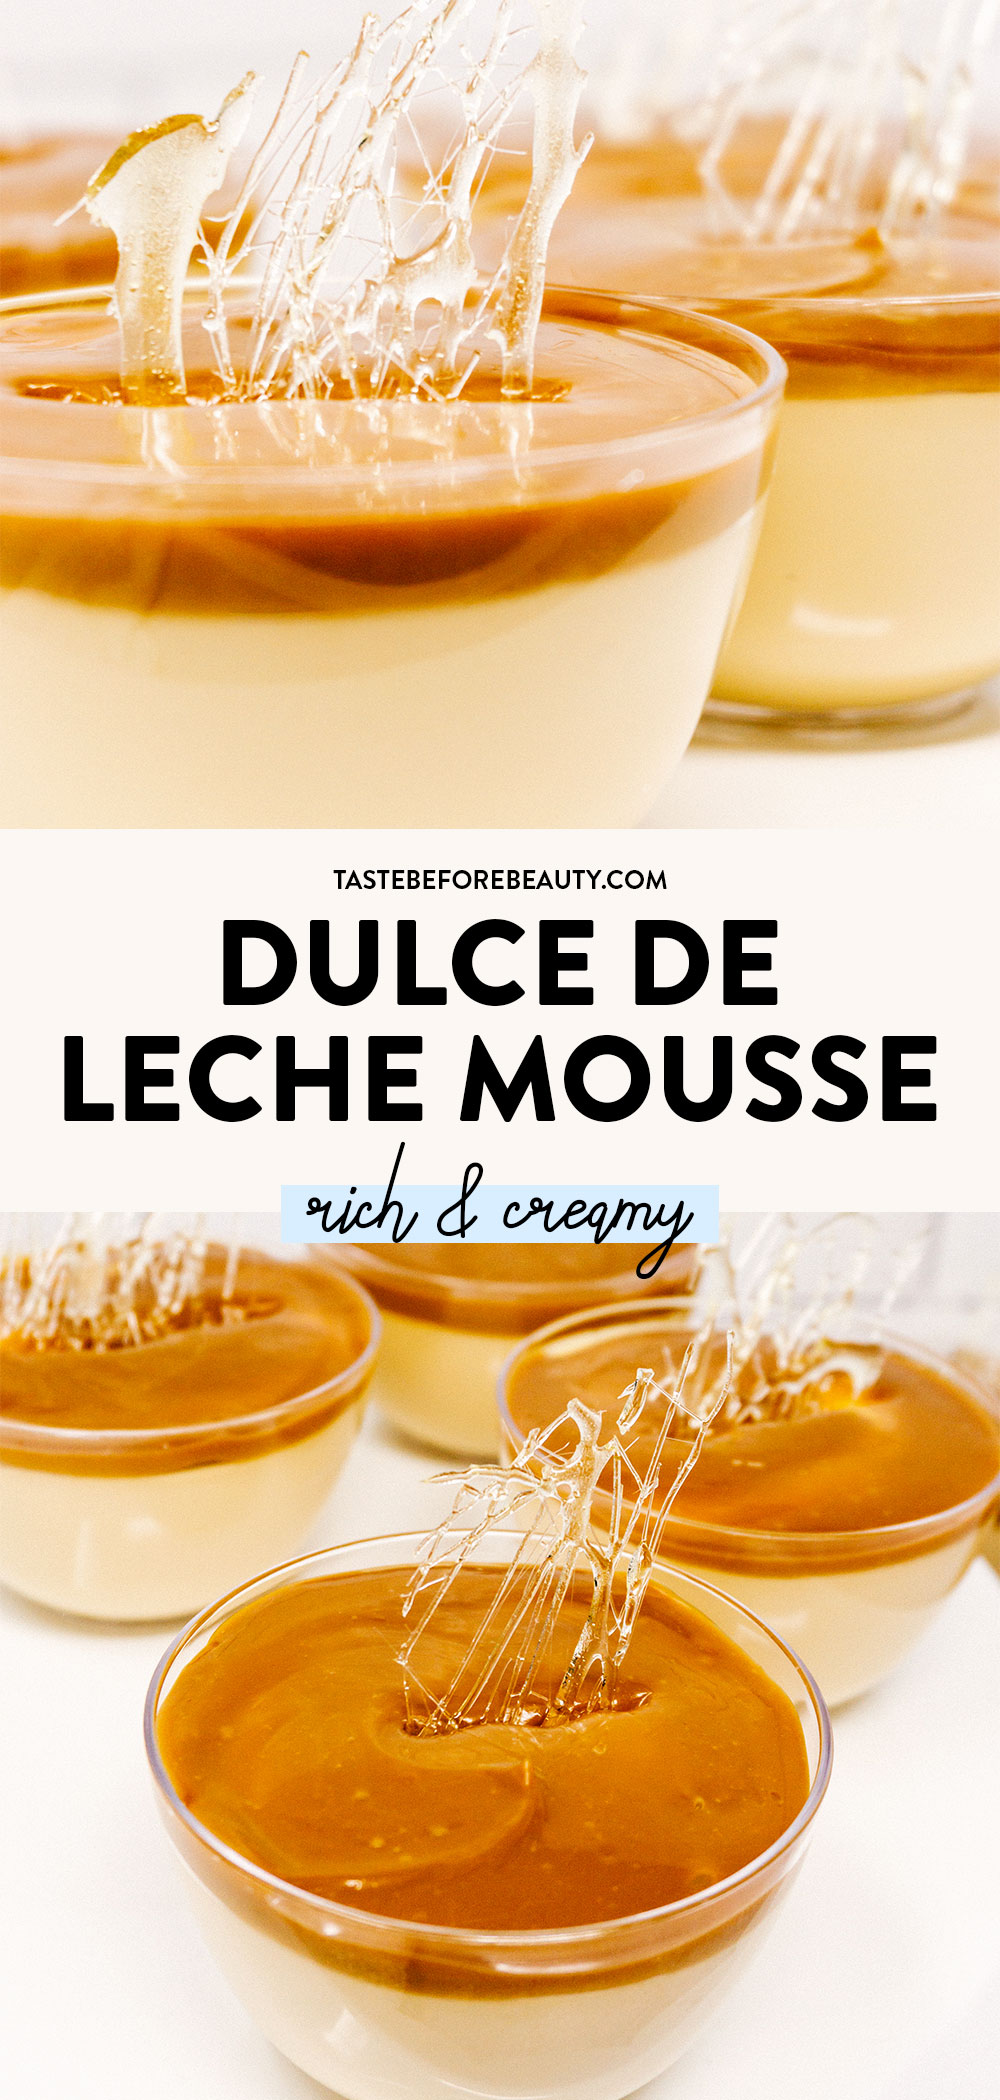 dulce de leche mousse with sugar decoration pinterest pin